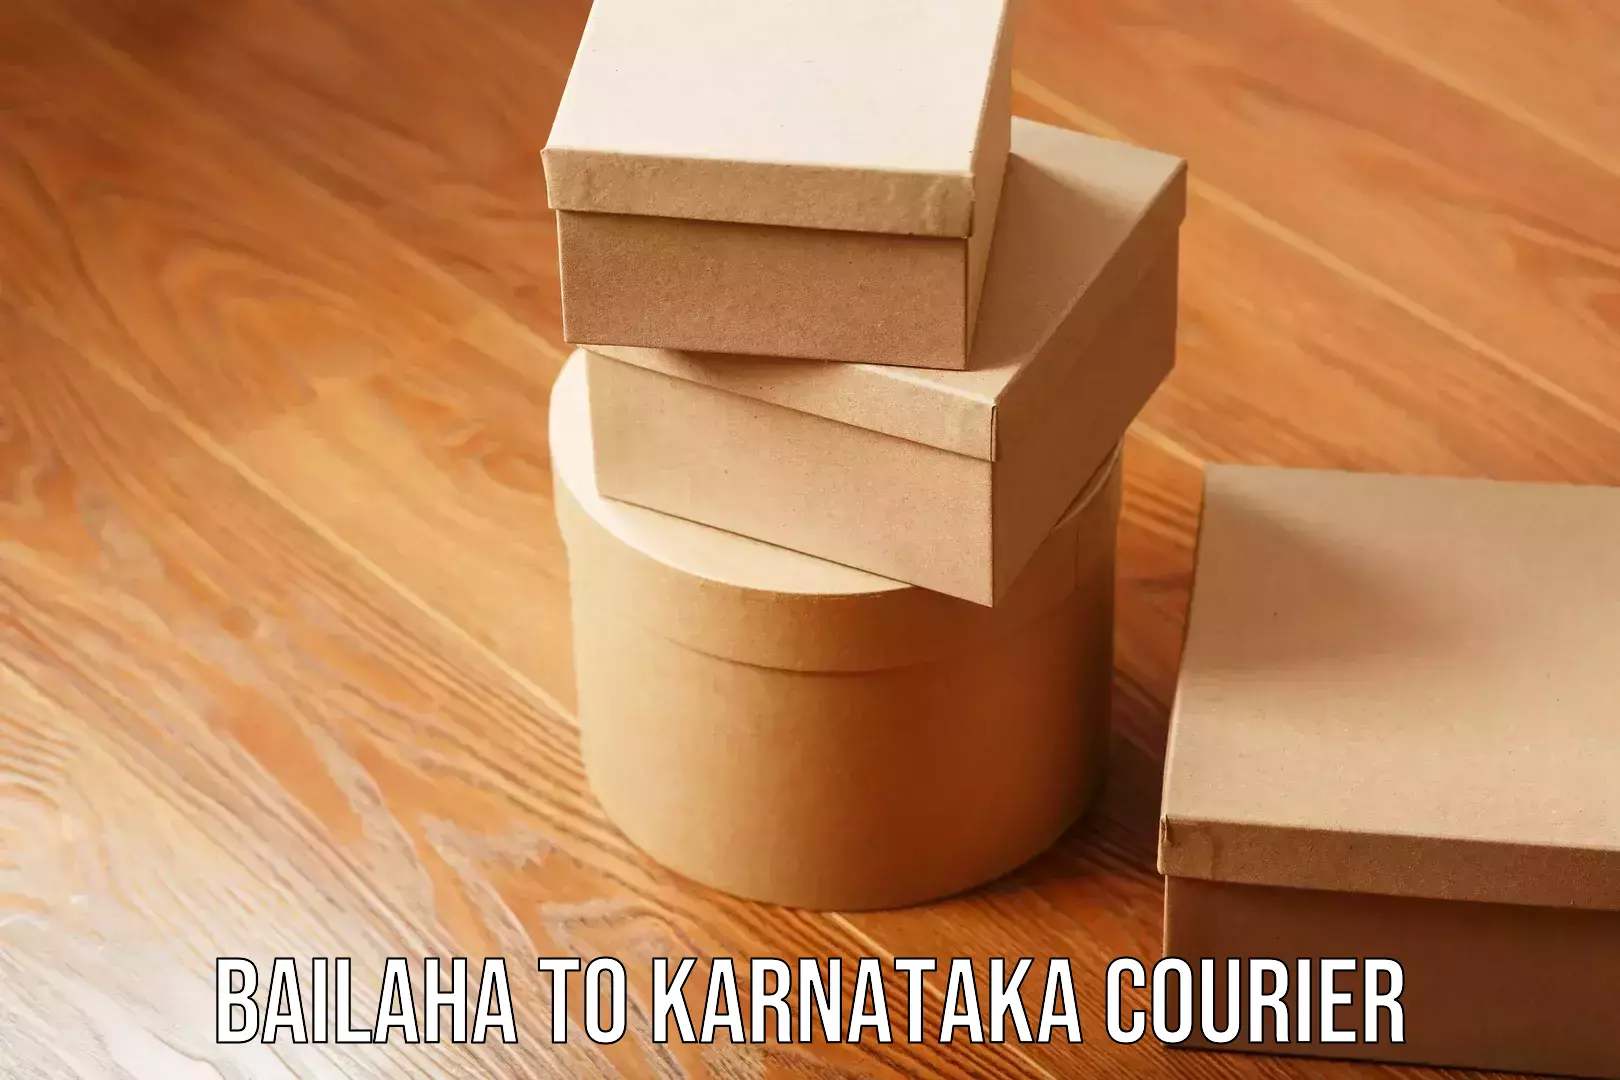 Reliable courier service Bailaha to Karnataka